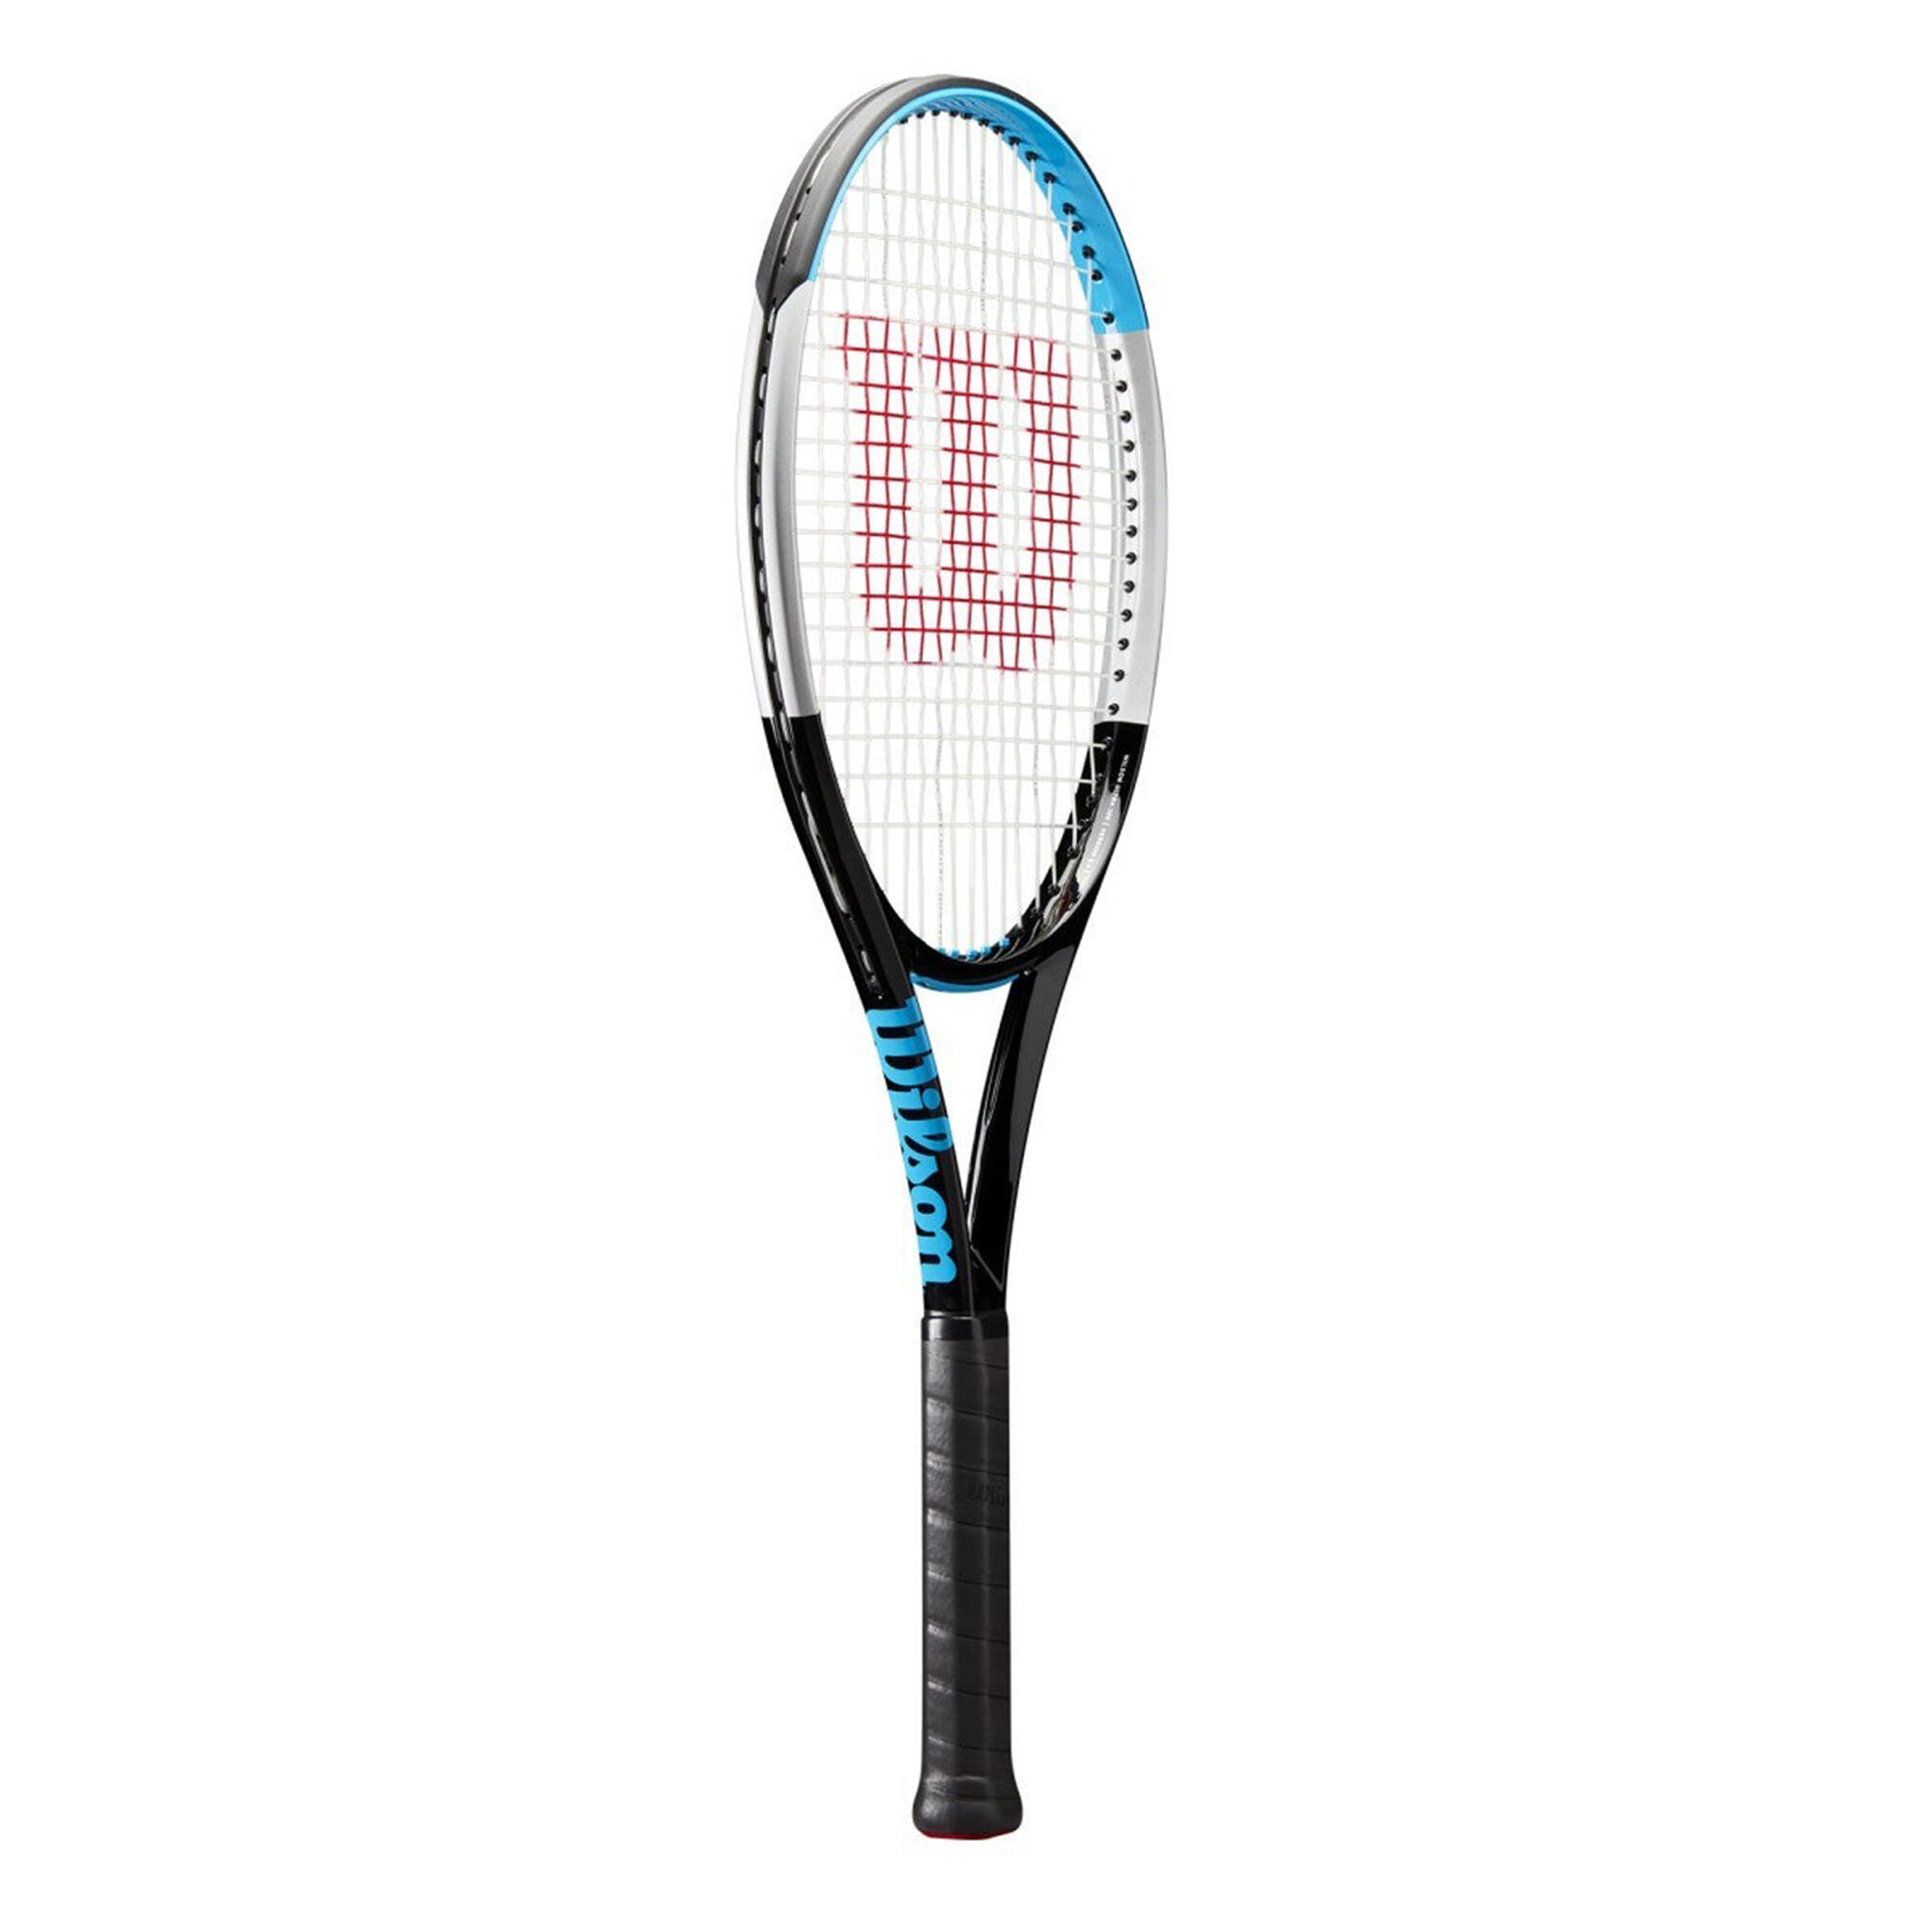 Adult Unstrung Tennis Racket Ultra 100 V3.0 - Black/Blue 1/3